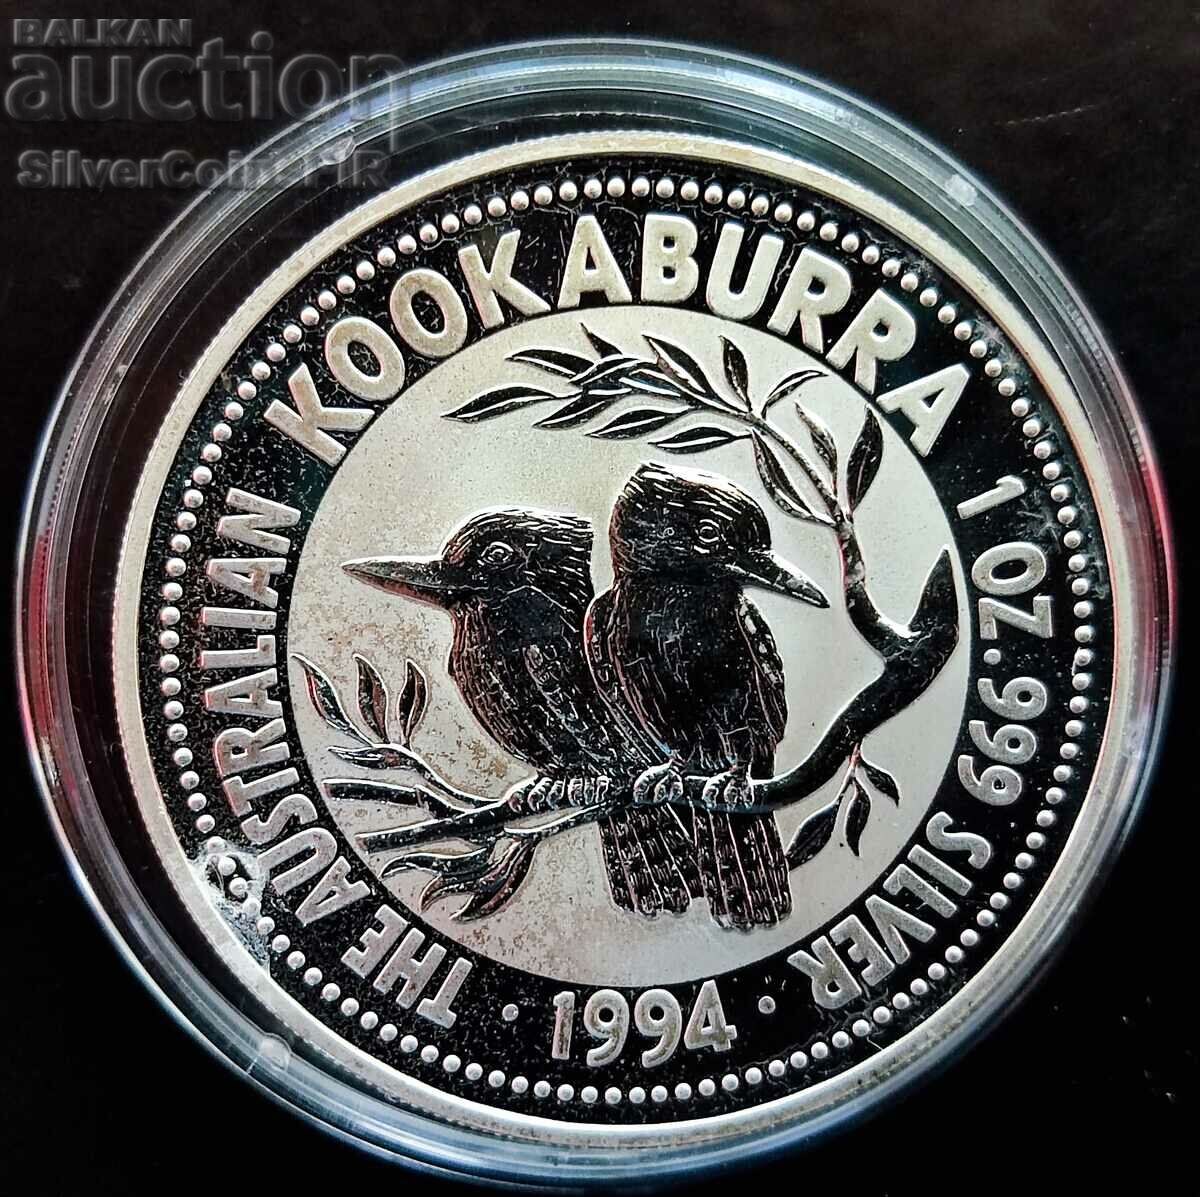 Argint 1 oz Australian Kookaburra 1994 Australia